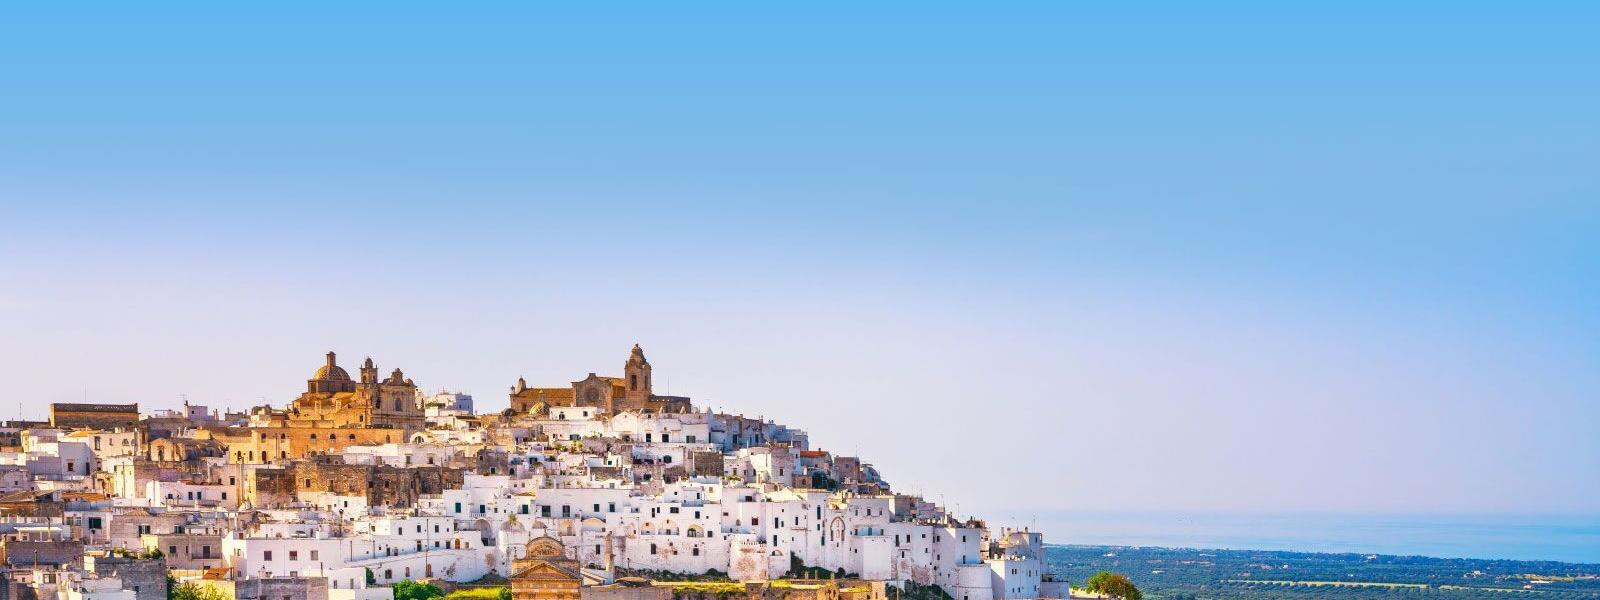 Ferienwohnungen und Ferienhäuser in Apulien - atraveo